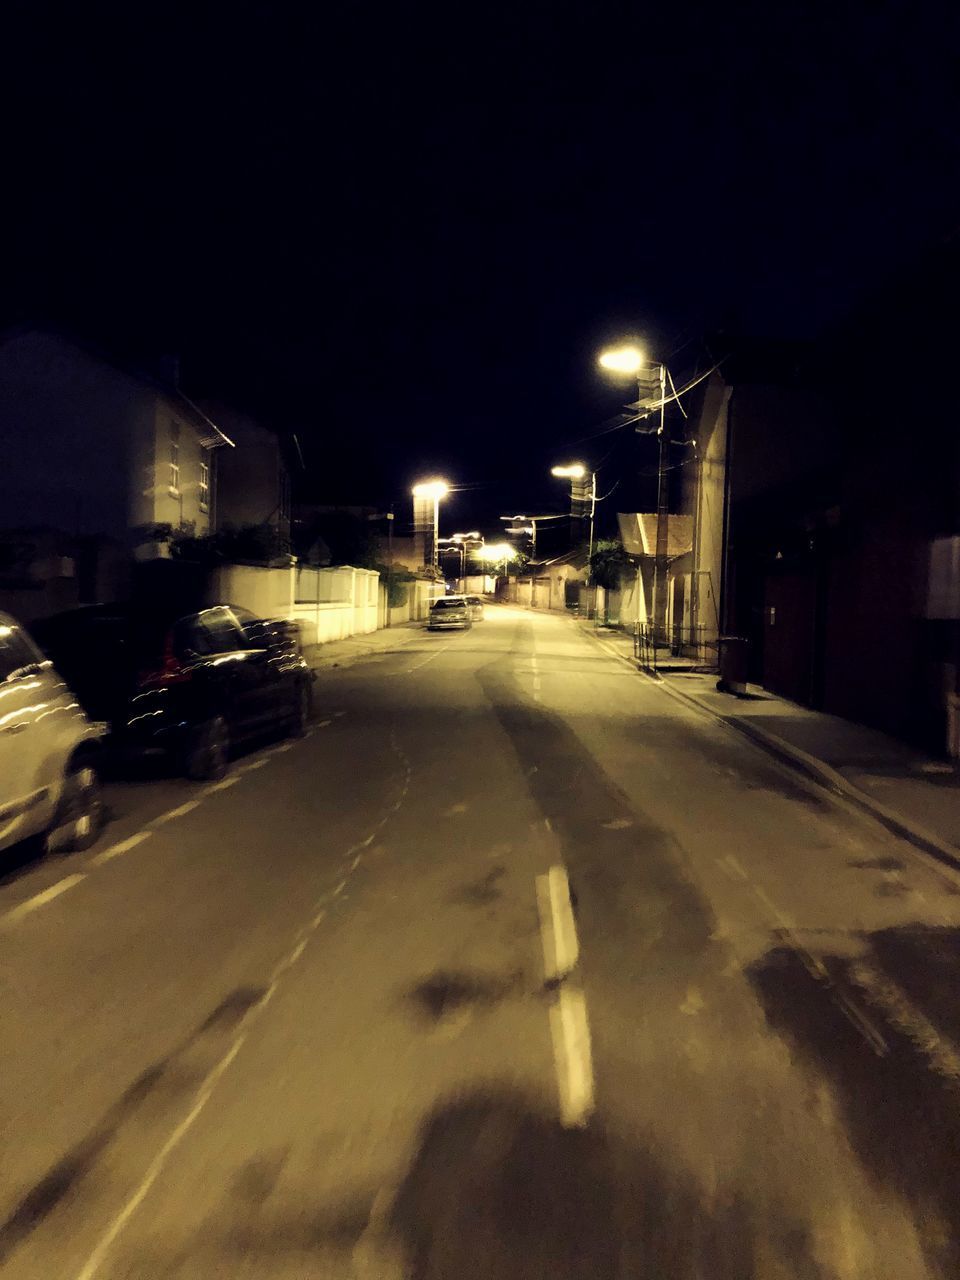 ILLUMINATED STREET AT NIGHT